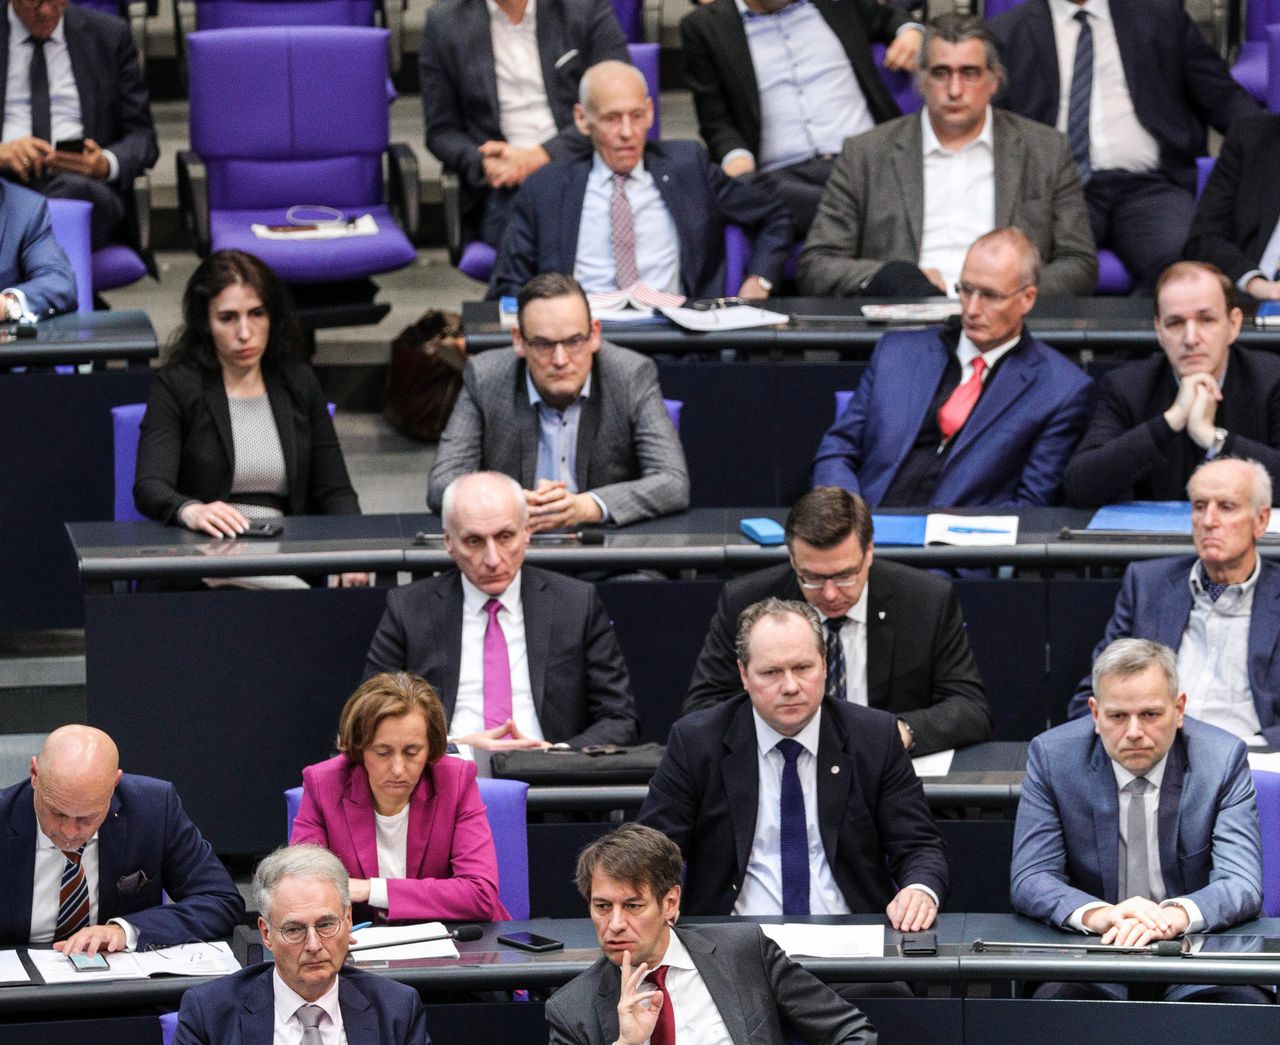 AfD-politici tijdens een debat in het Duitse parlement, eerder deze maand, over de aanslag in Hanau.